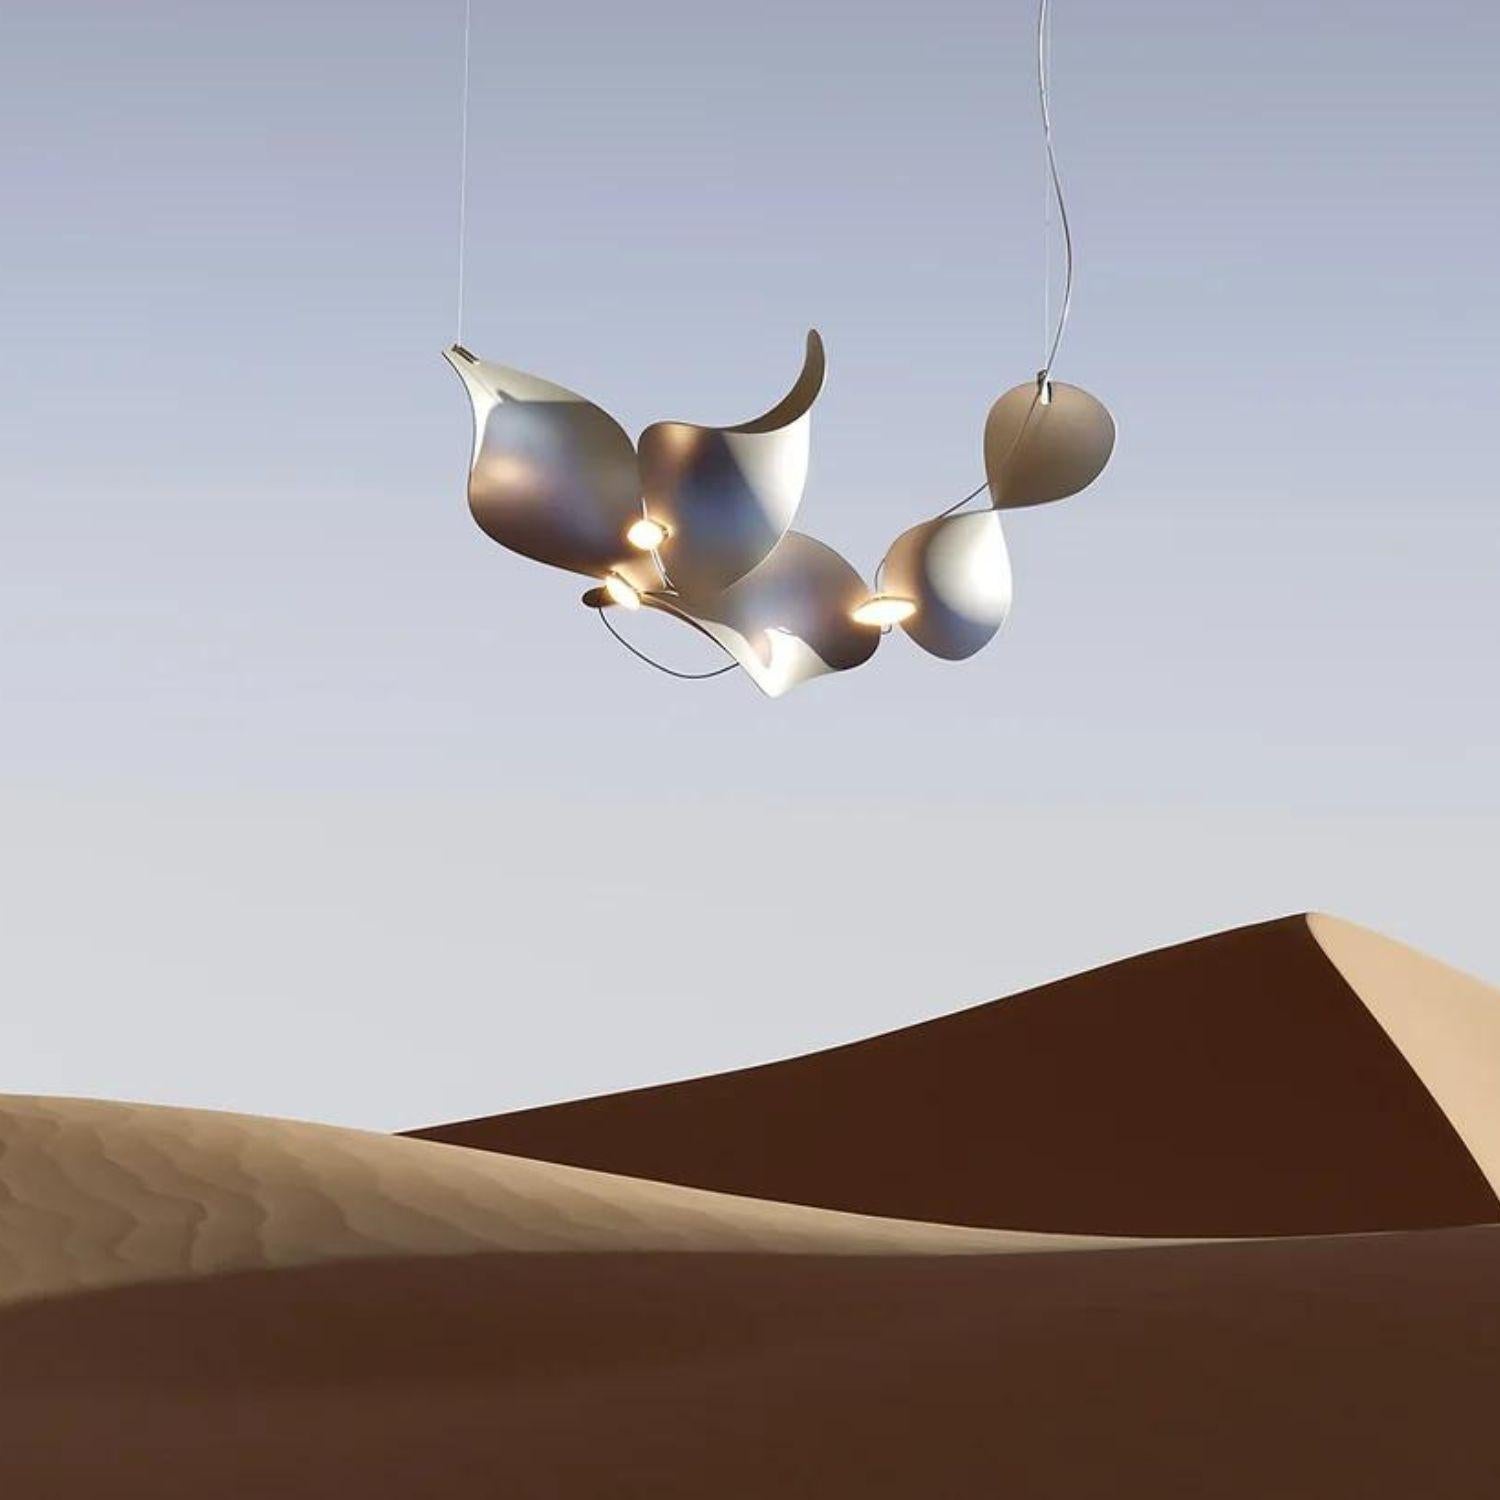 Lampe à suspension 'Dune 4' de Daniel Becker en aluminium anodisé pour objets mousse

Conçue par l'artiste berlinois Daniel Becker, la collection 